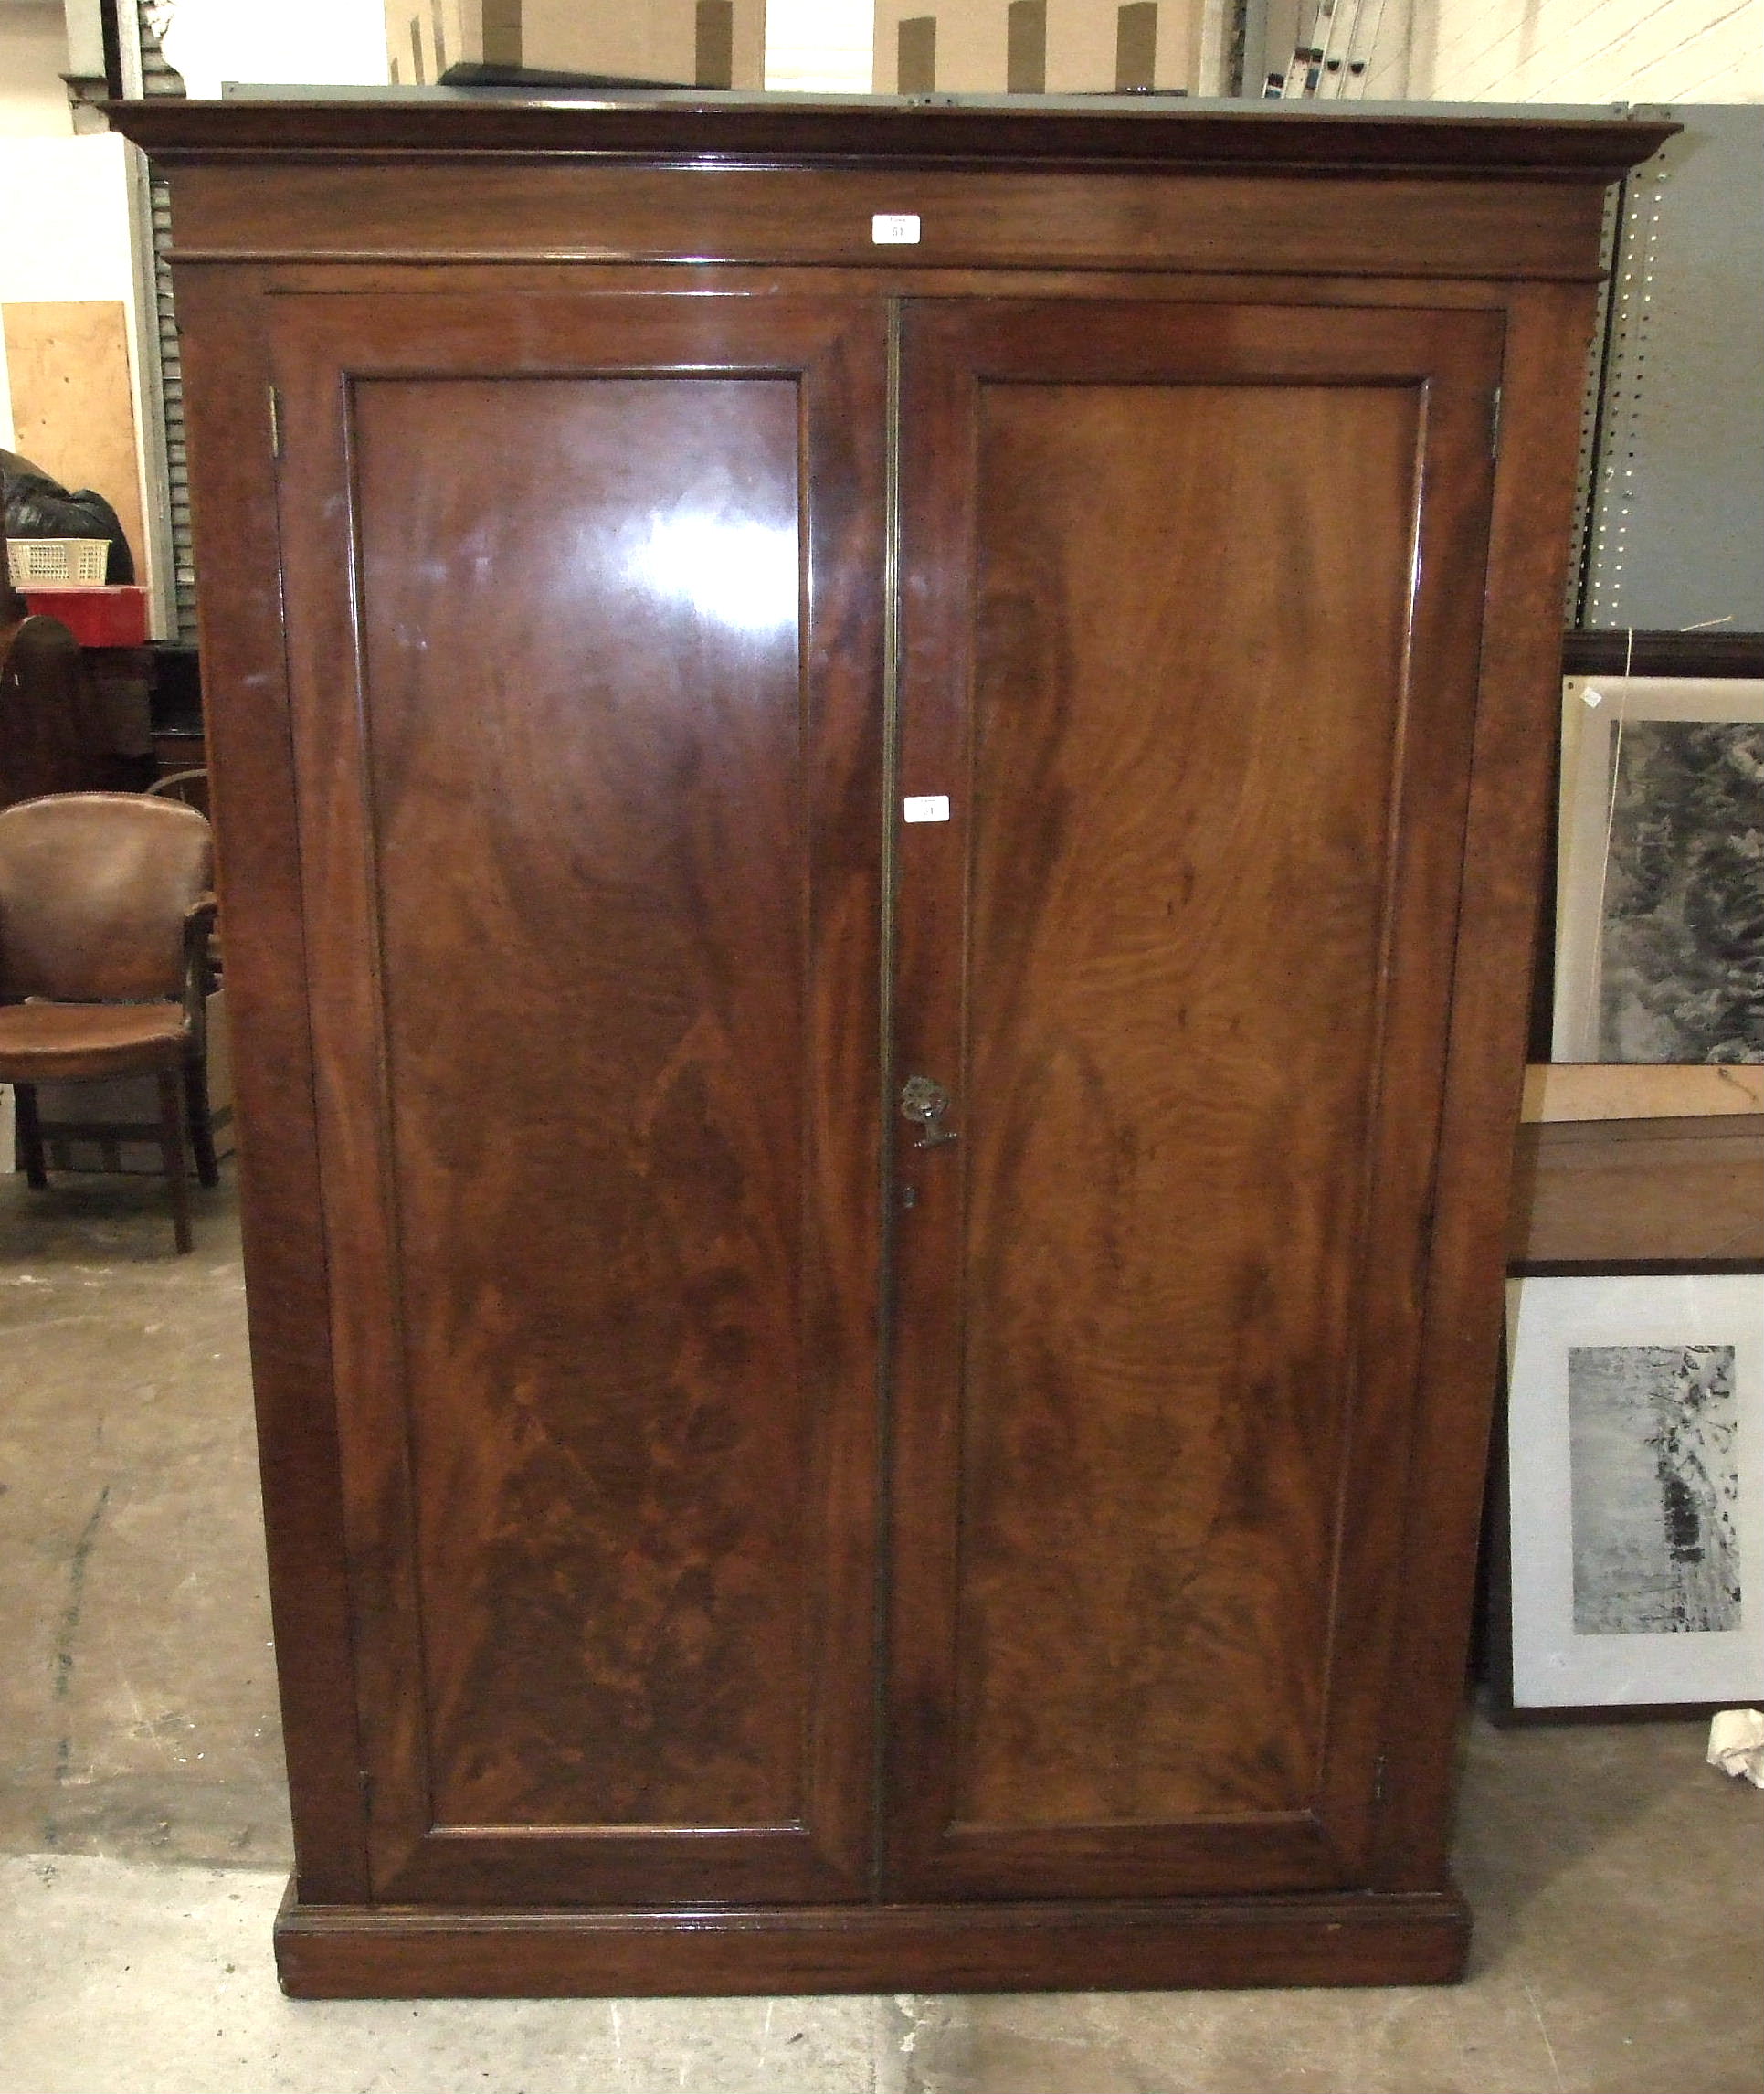 A 19th century mahogany two-door wardrobe, 127cm wide, 180cm high.